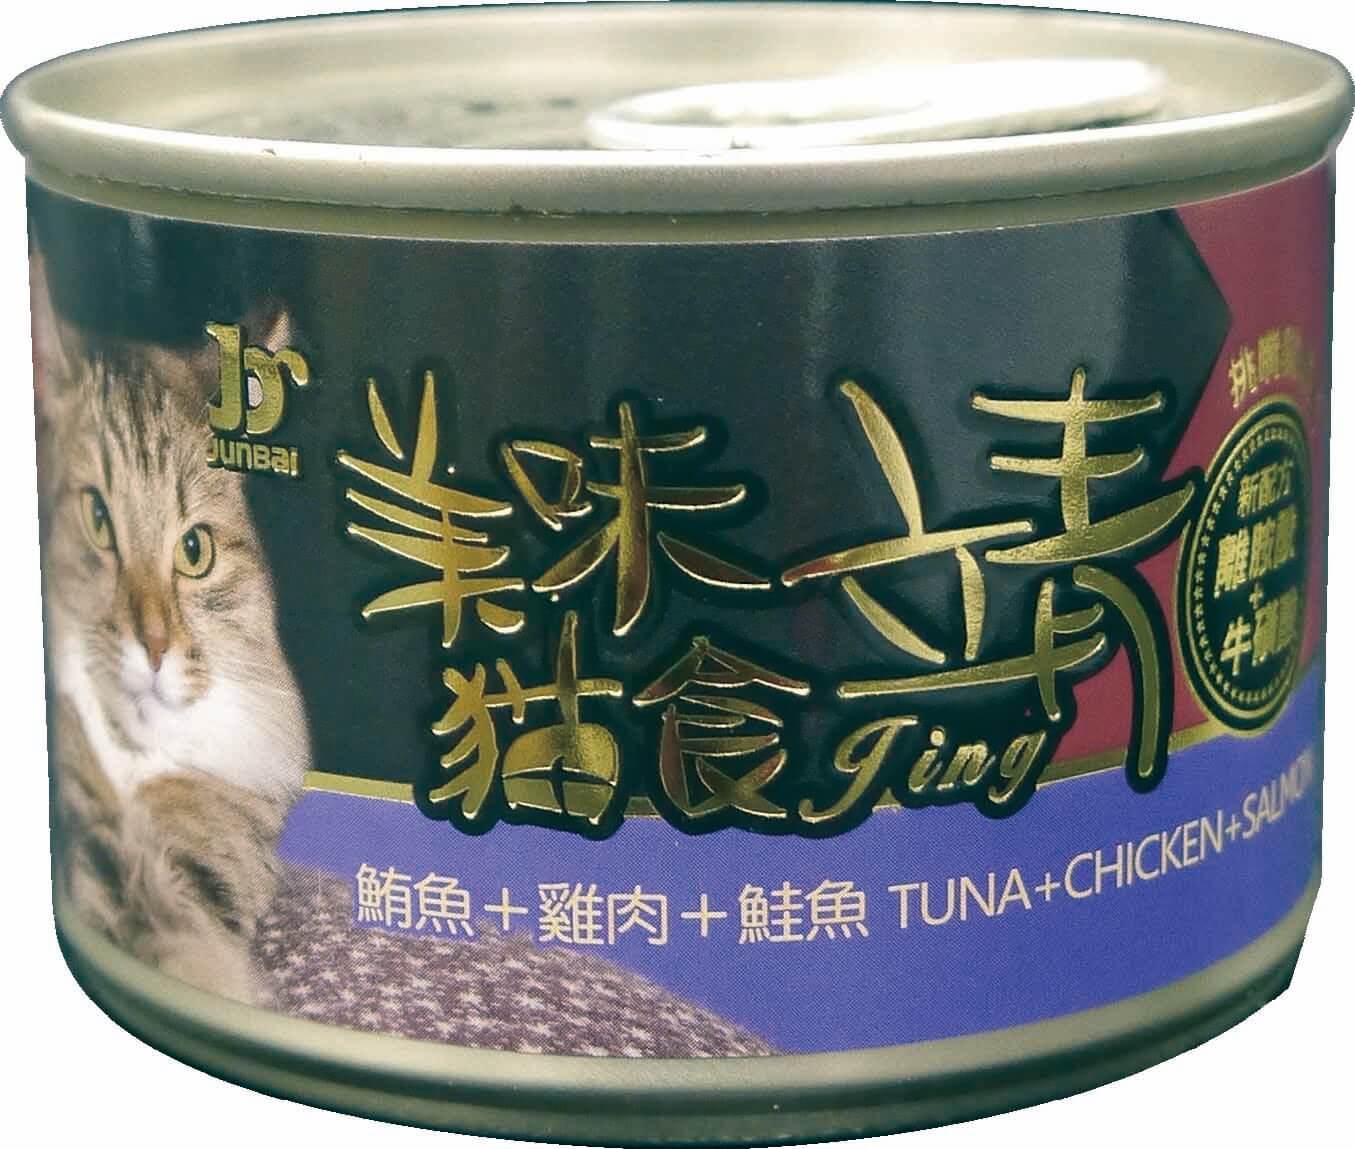 靖特級貓罐160G-鮪魚+雞肉+鮭魚
Jing cat can-tuna+chicken+salmon